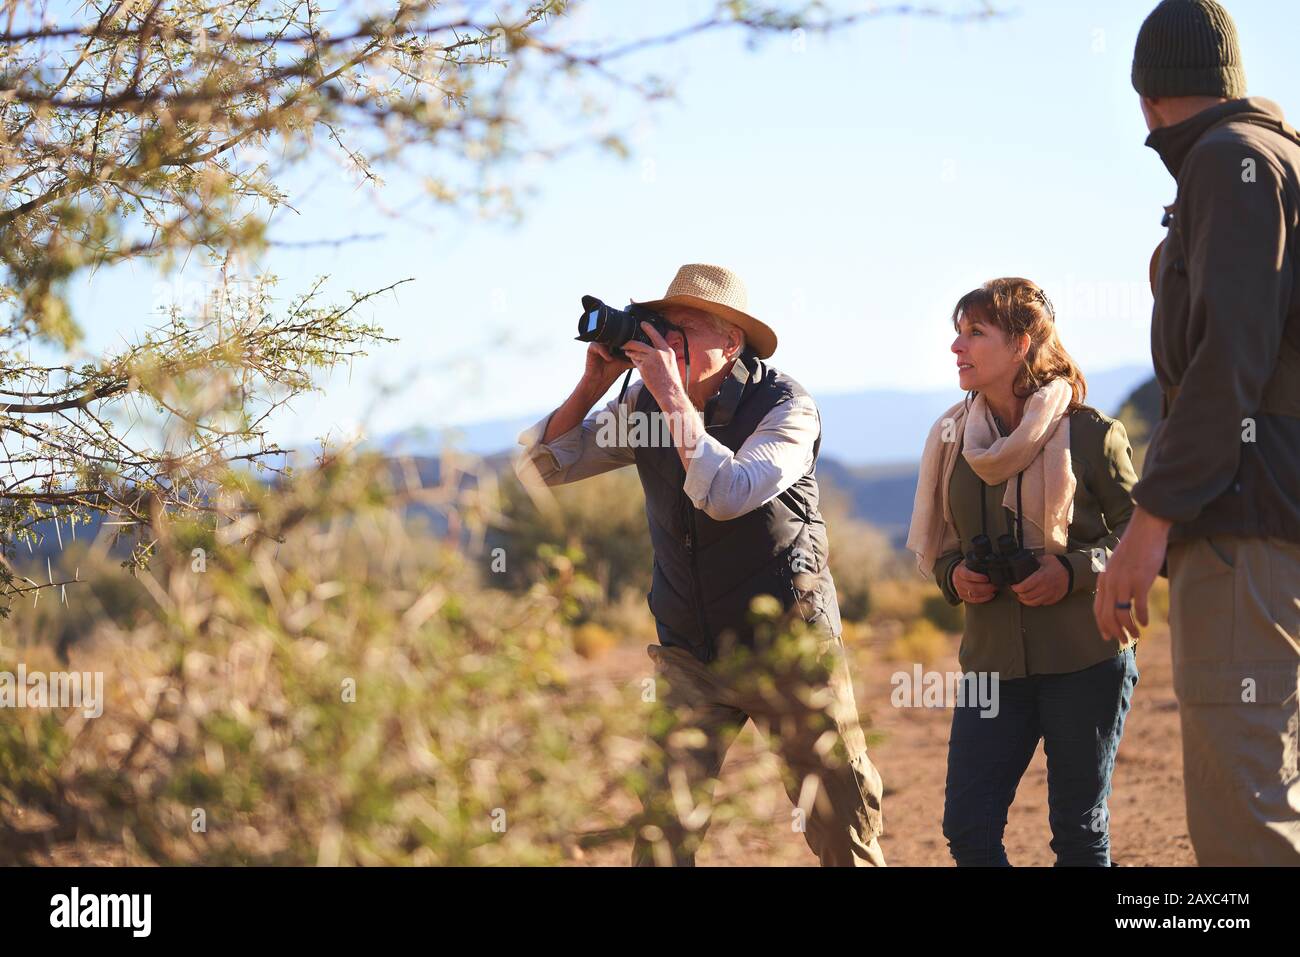 Senior man on safari using digital camera Stock Photo